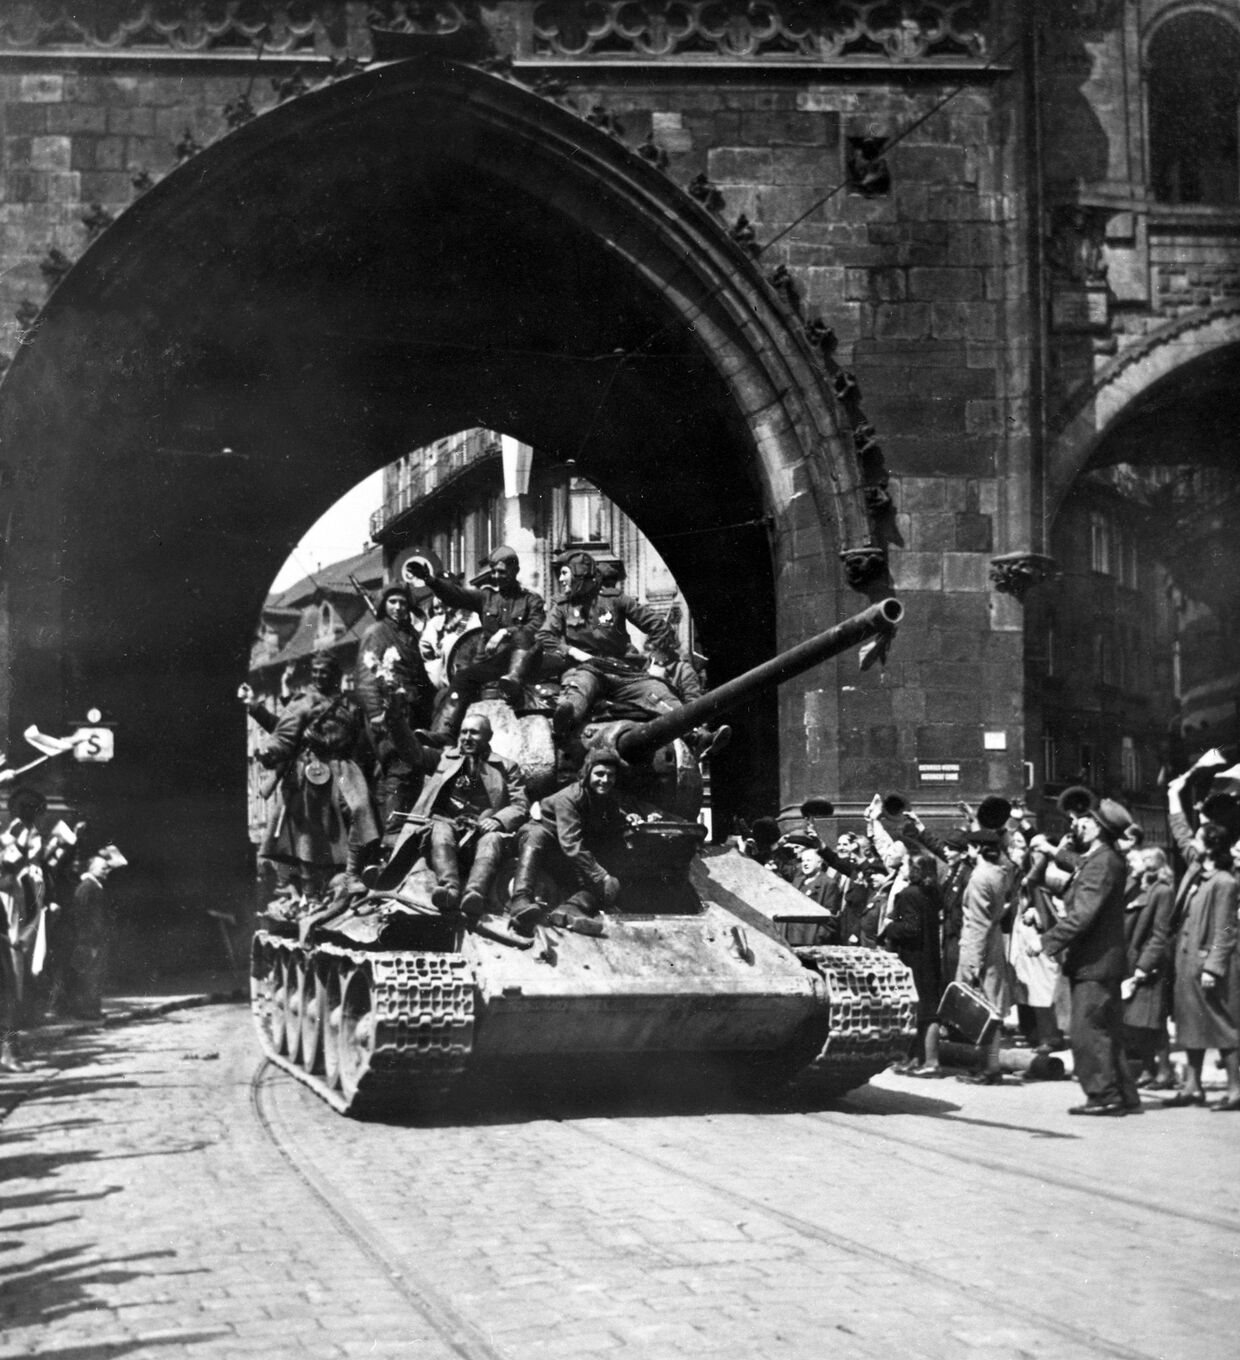 Жители Праги приветствуют советских воинов-освободителей